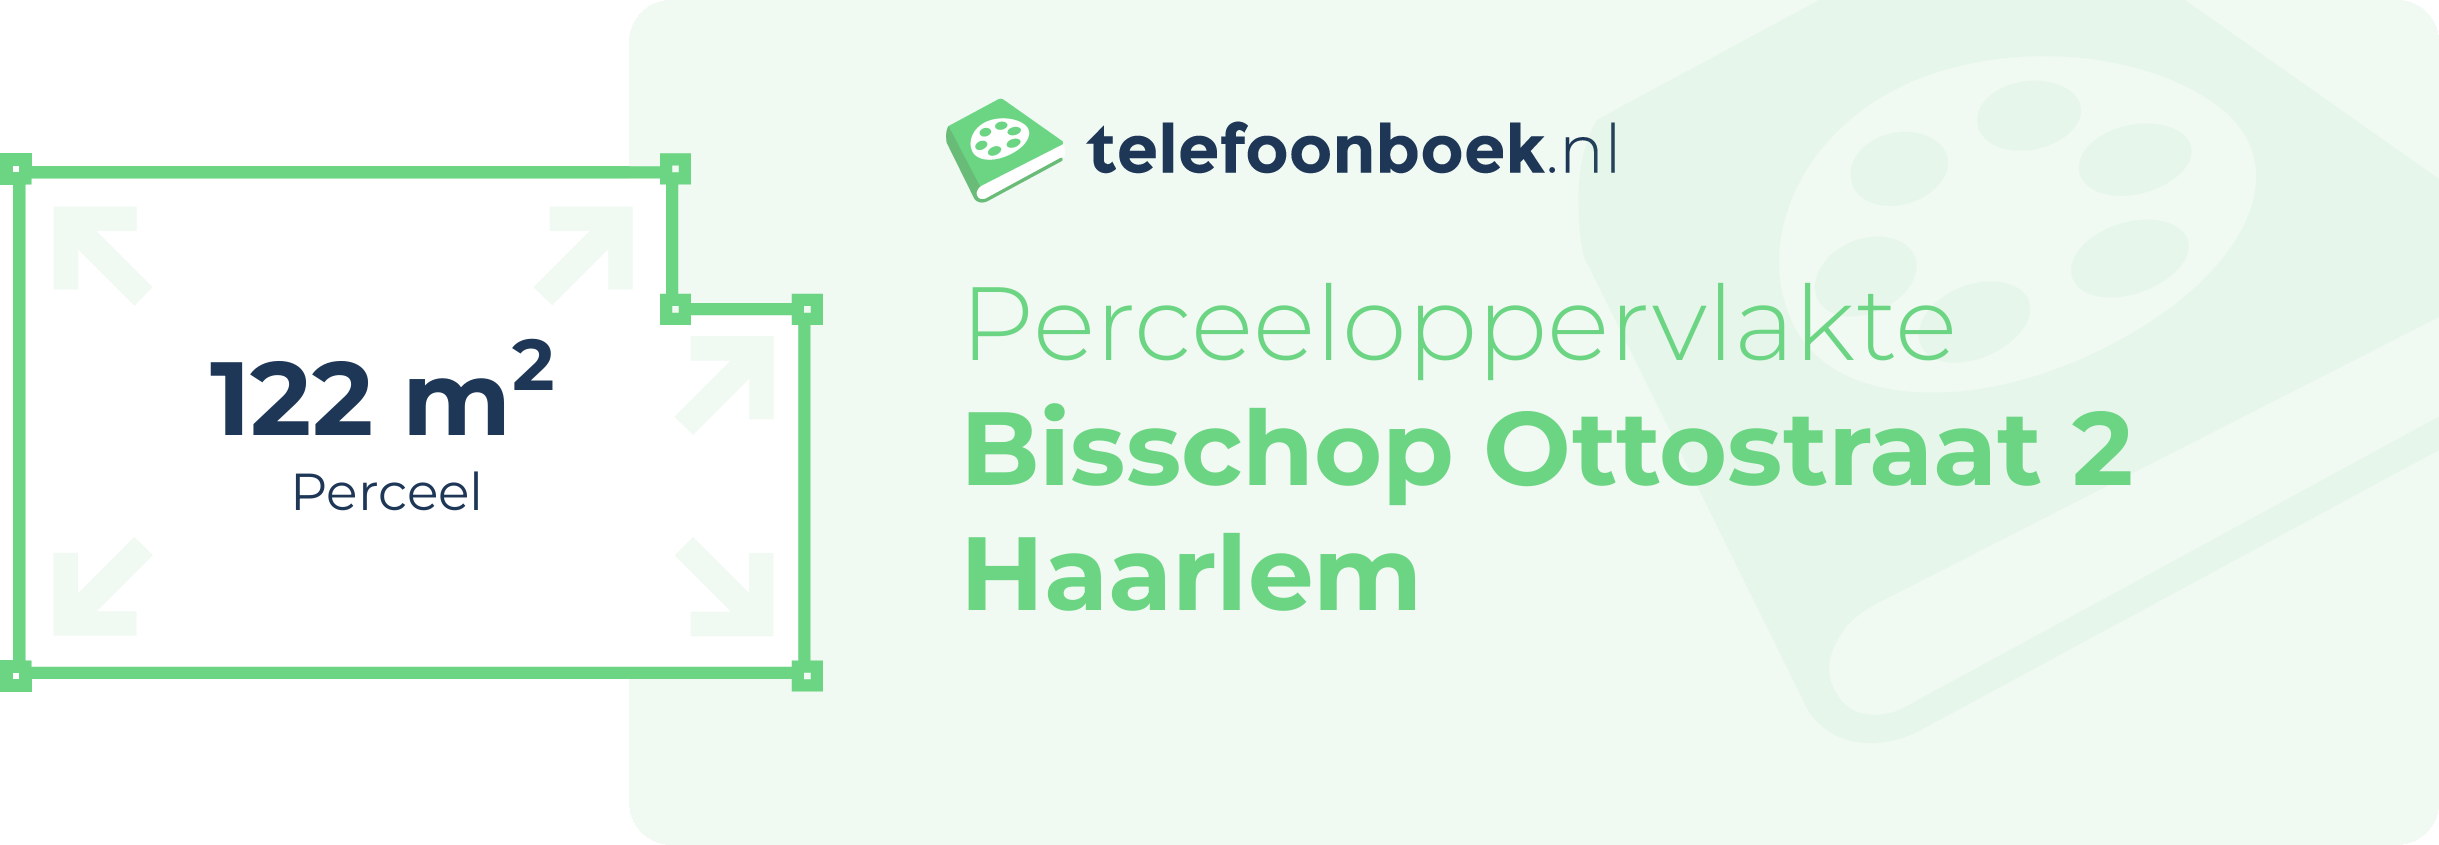 Perceeloppervlakte Bisschop Ottostraat 2 Haarlem